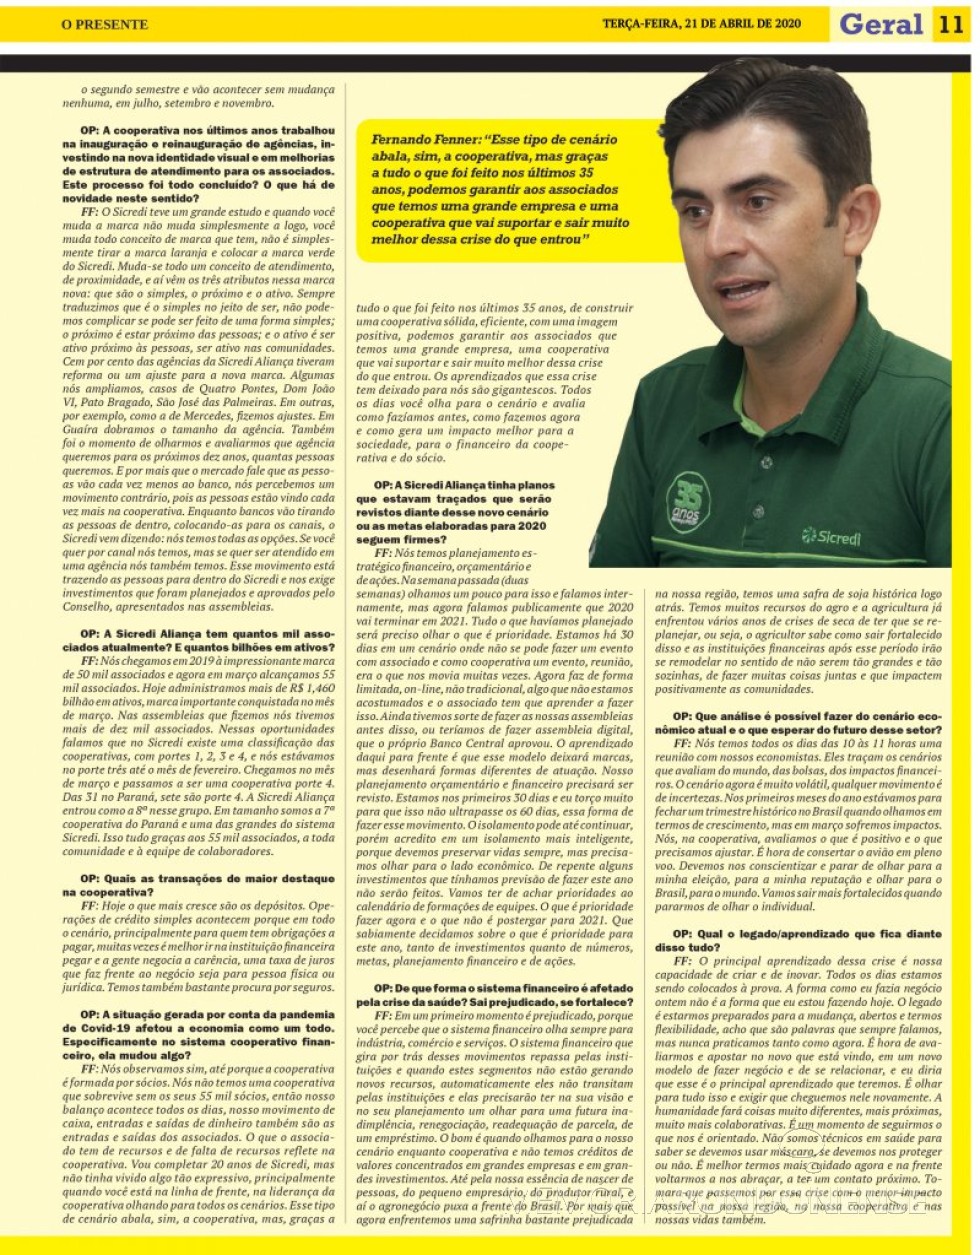 || Página final da entrevista com o diretor-executivo da Sicredi Aliança PR/SP, Fernando Fenner.
Imagem: Acervo O Presente - FOTO 22 - 